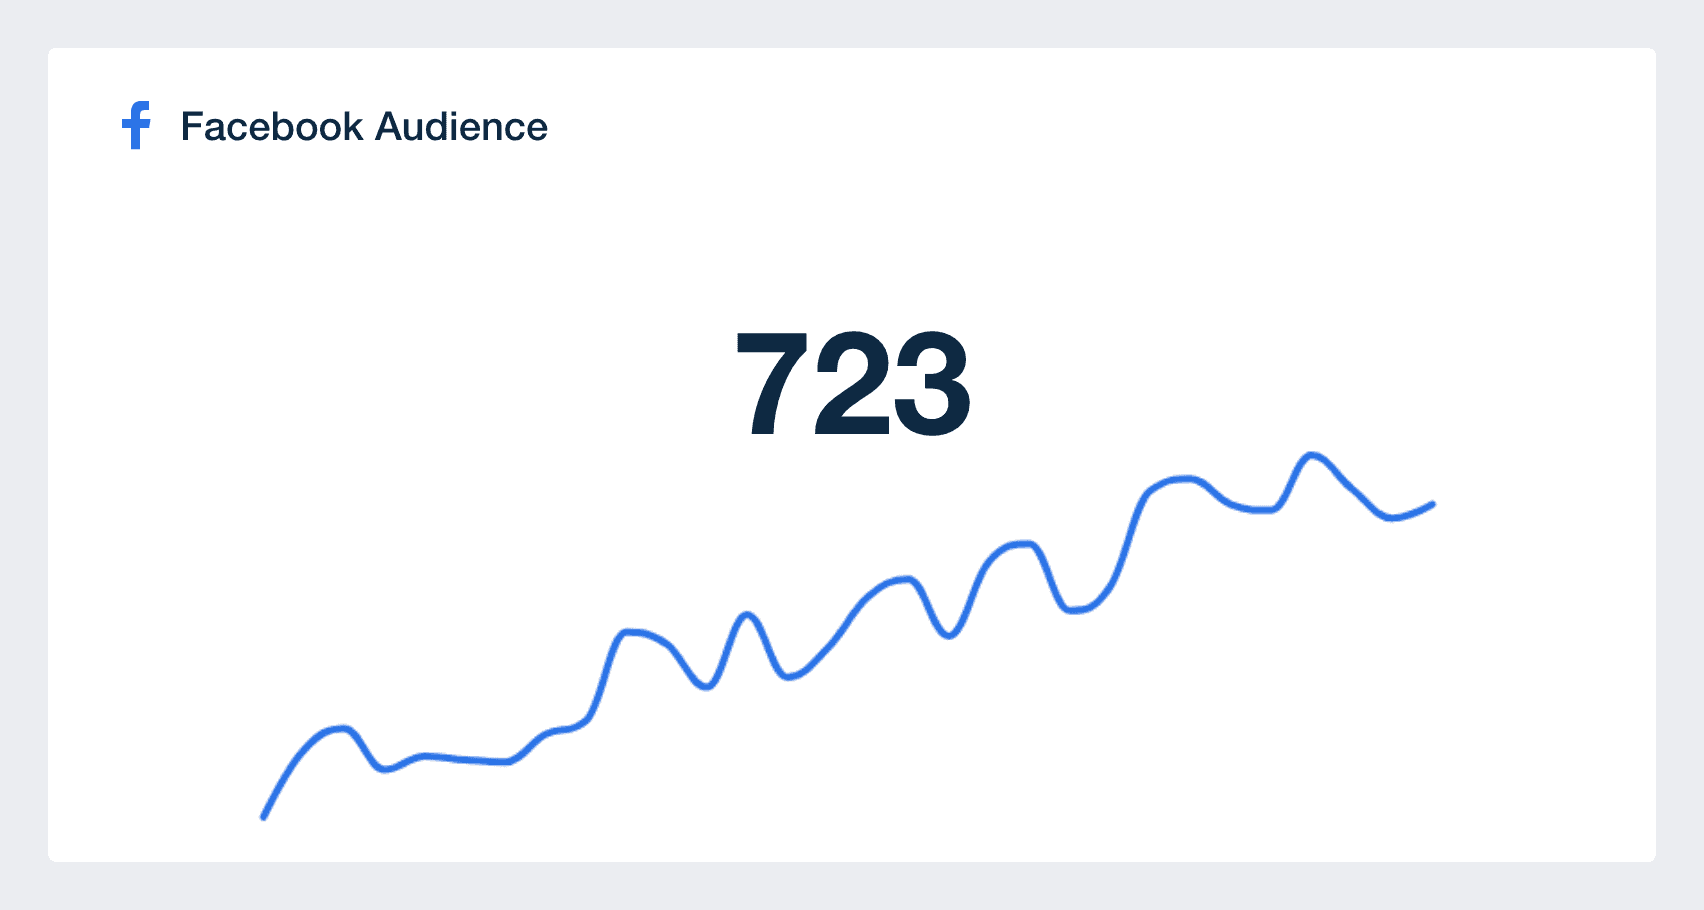 Facebook Audience metric in dashboard